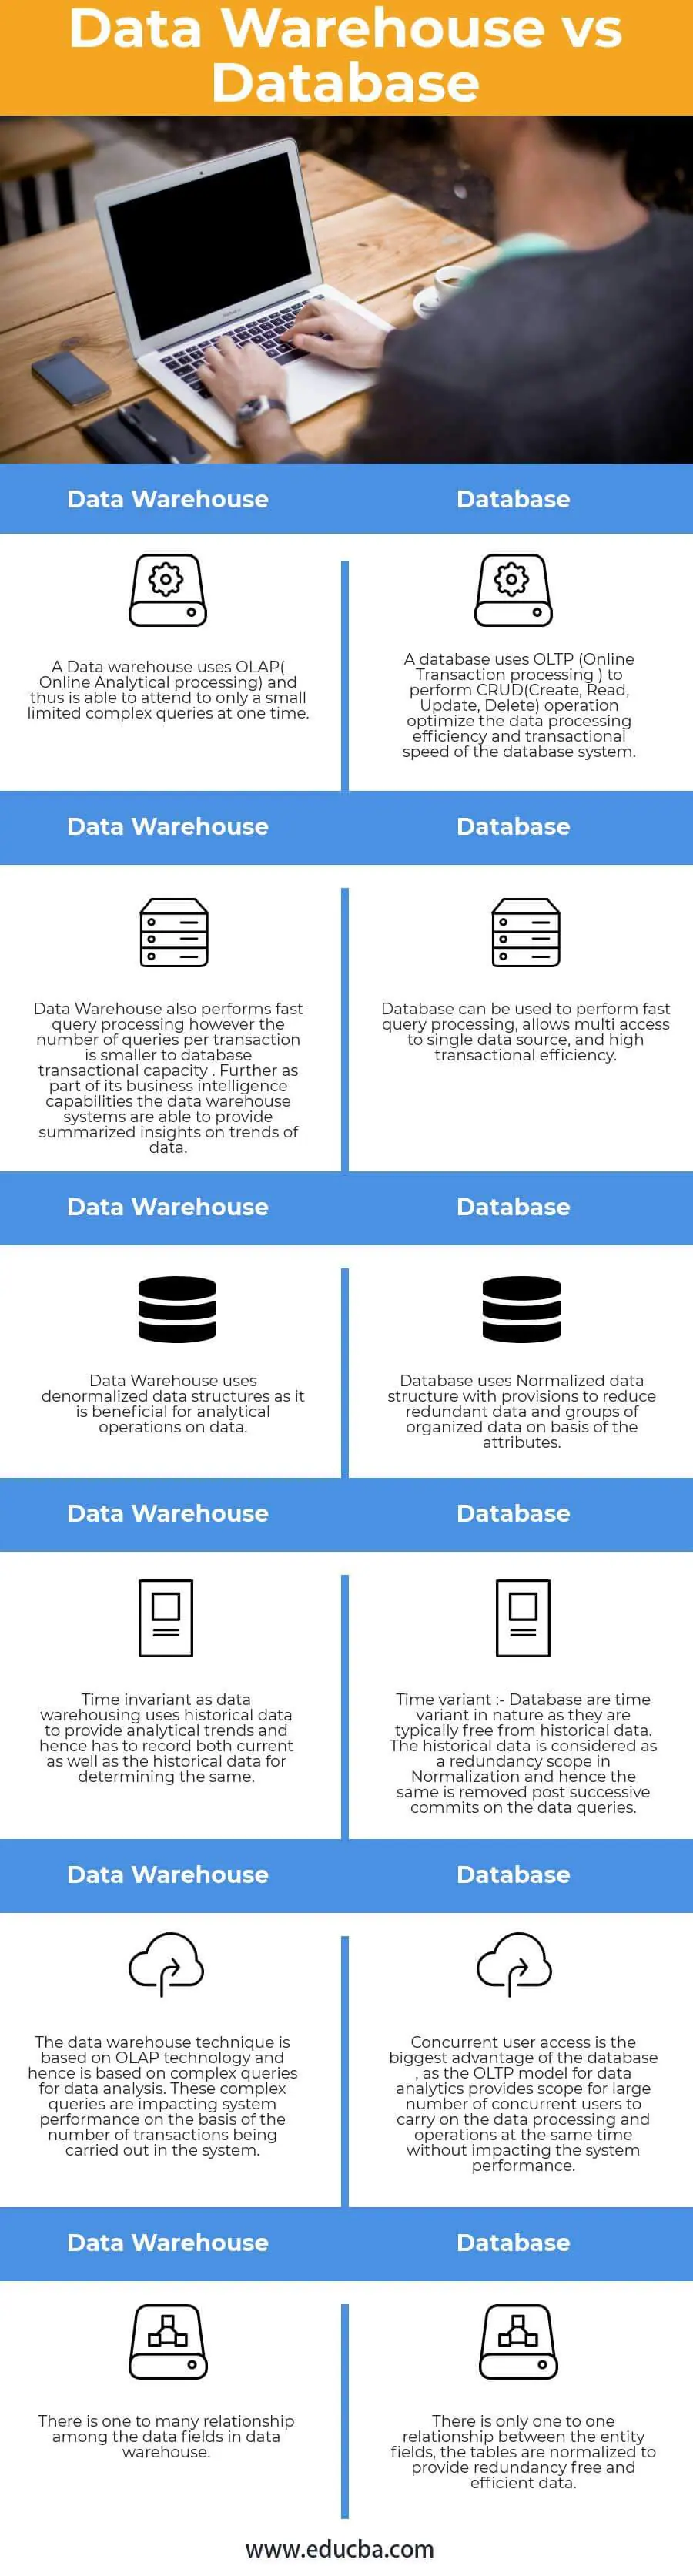 Data-Warehouse-vs-Database-info